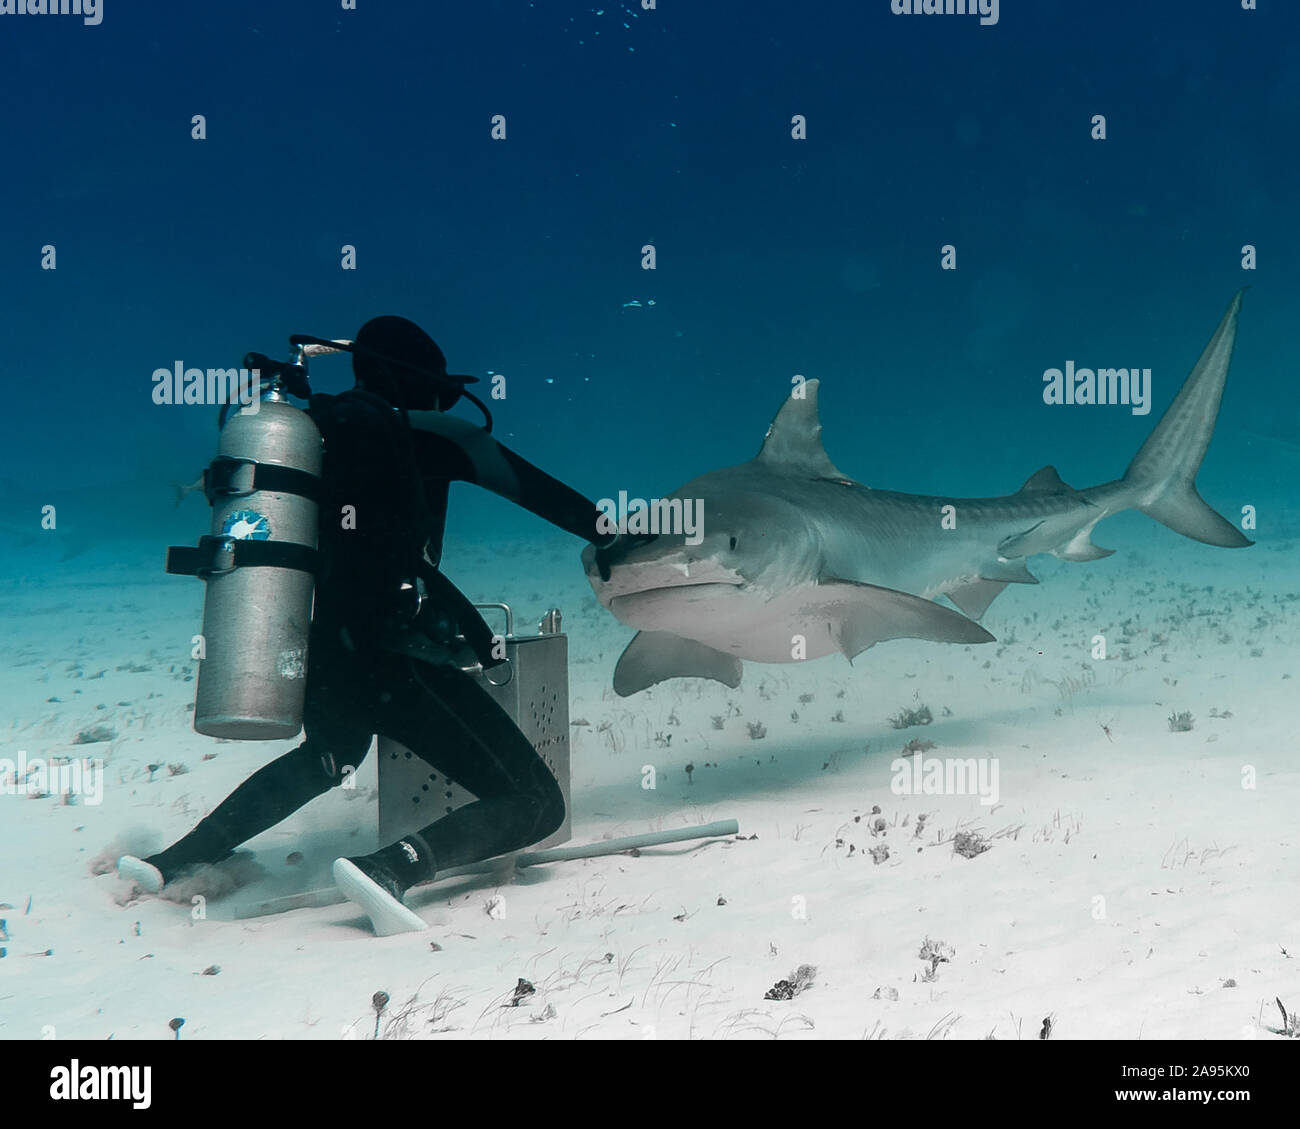 BAHAMAS: Einfach! Roberta schiebt die Shark entfernt, wie es untersucht die in der köderbox. Unglaubliche Fotos zeigen eine mutige Hai Schrägförderer nach oben nah und Stockfoto